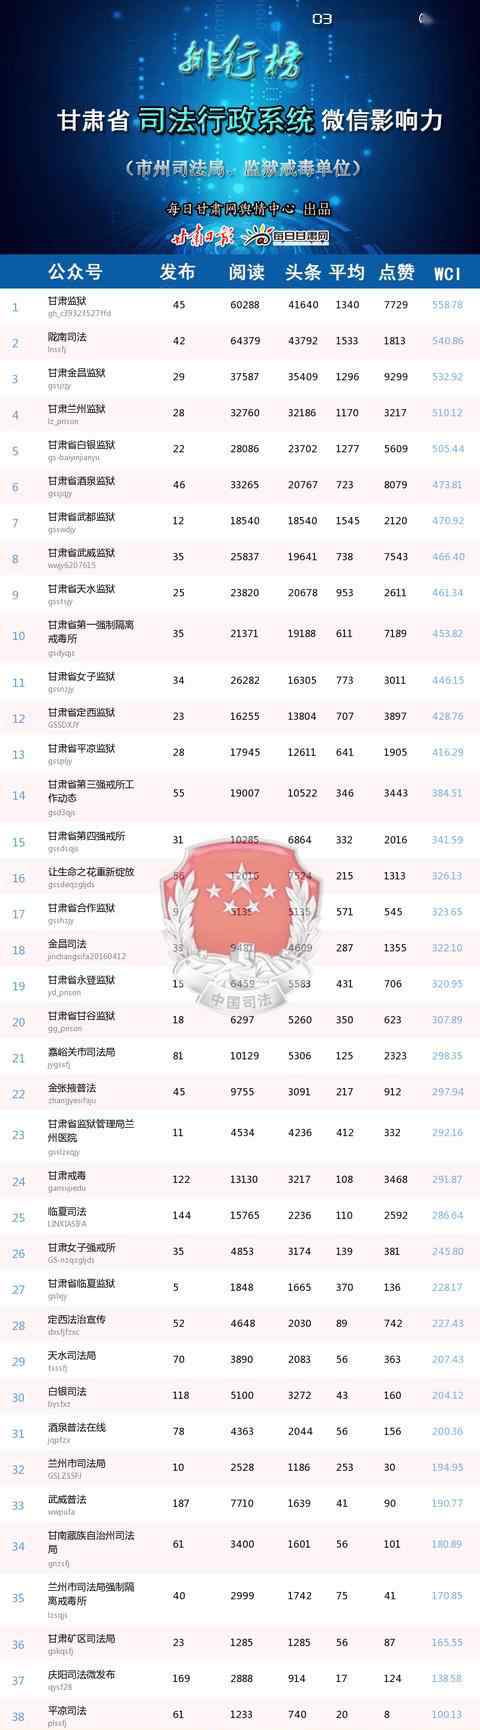 甘肃司法网 甘肃省司法行政系统2020年3月微信影响力排行榜